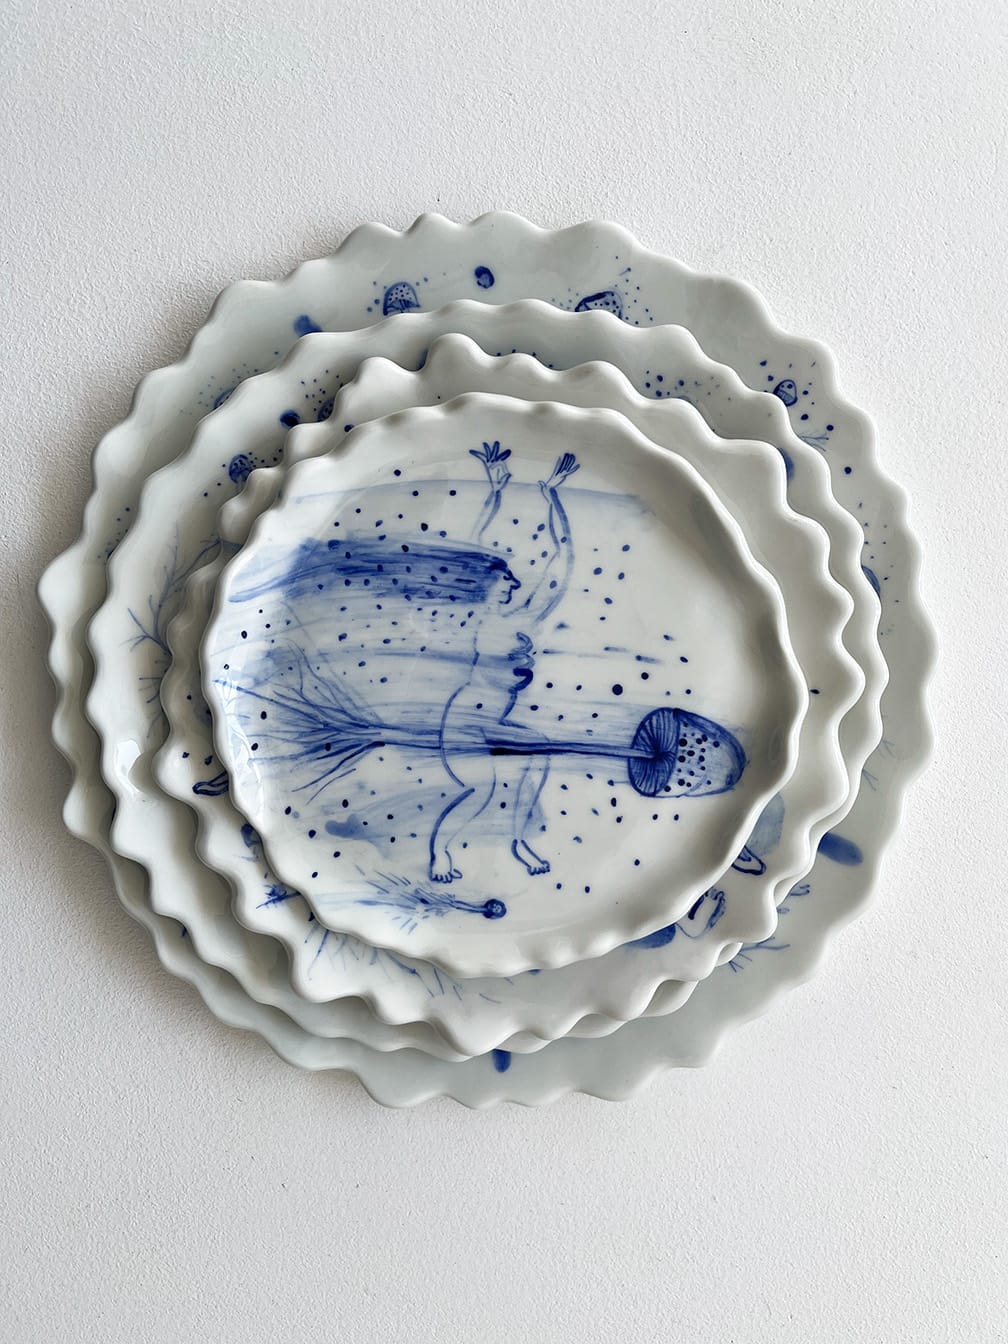 Hand-illustriertes dekoratives Teller Set I Set of hand-illustrated  decorative plates RATTE MAL